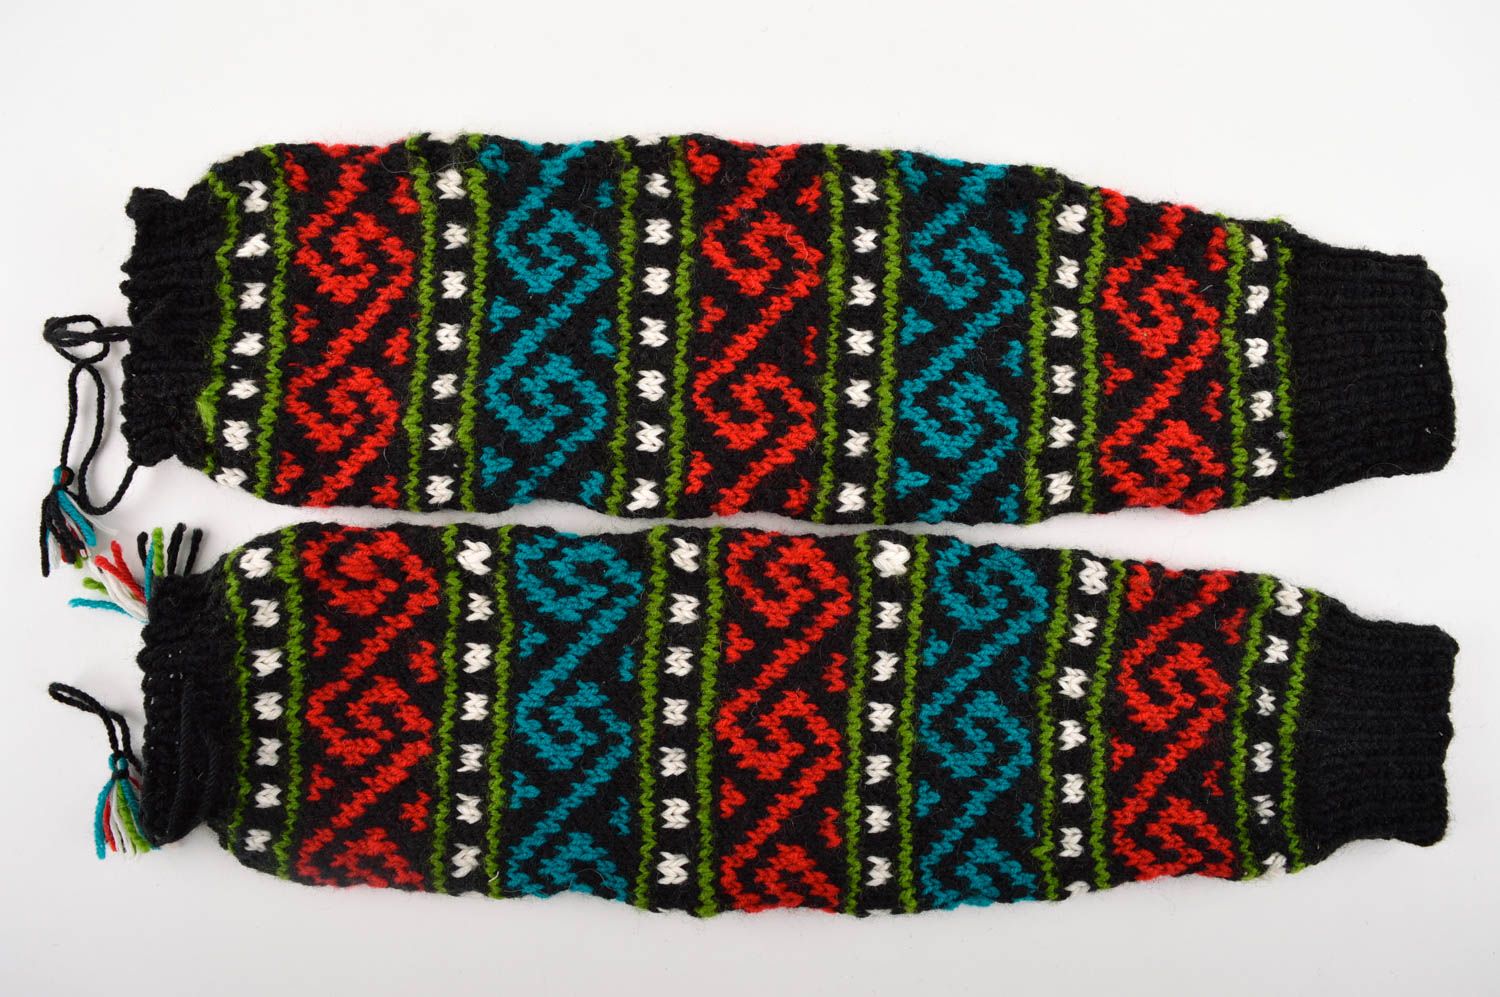 Handmade leg warmers knitted winter socks woolen leg warmers for women photo 5